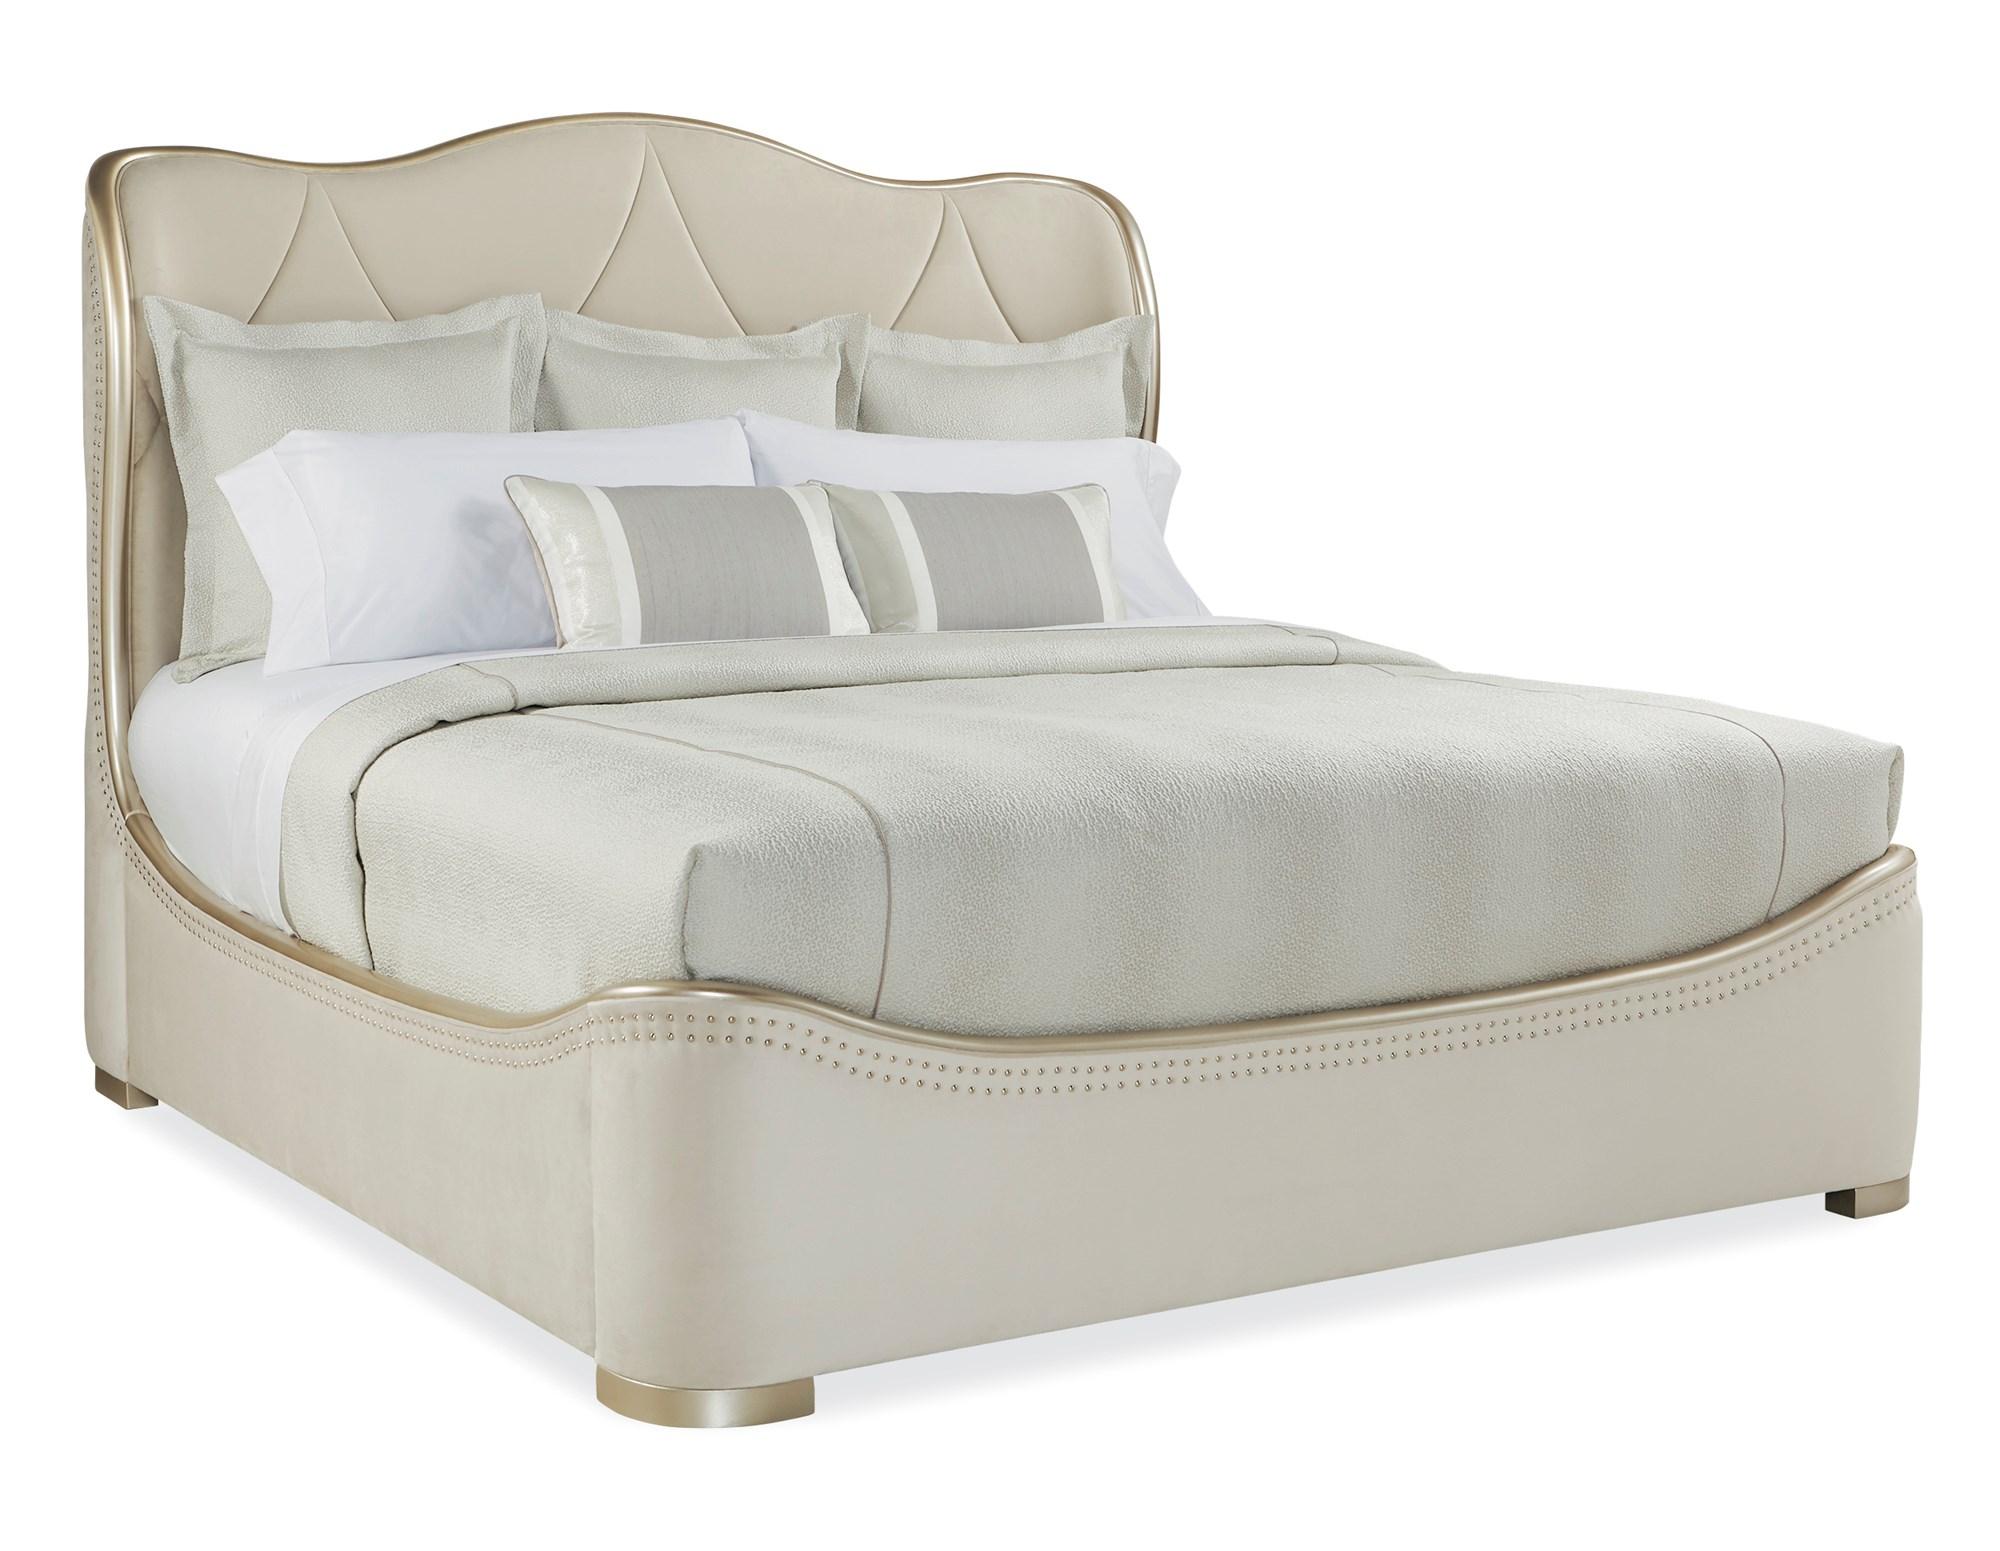 Contemporary Sleigh Bed ADELA CAL KING BED C013-016-142 in Cream Velvet